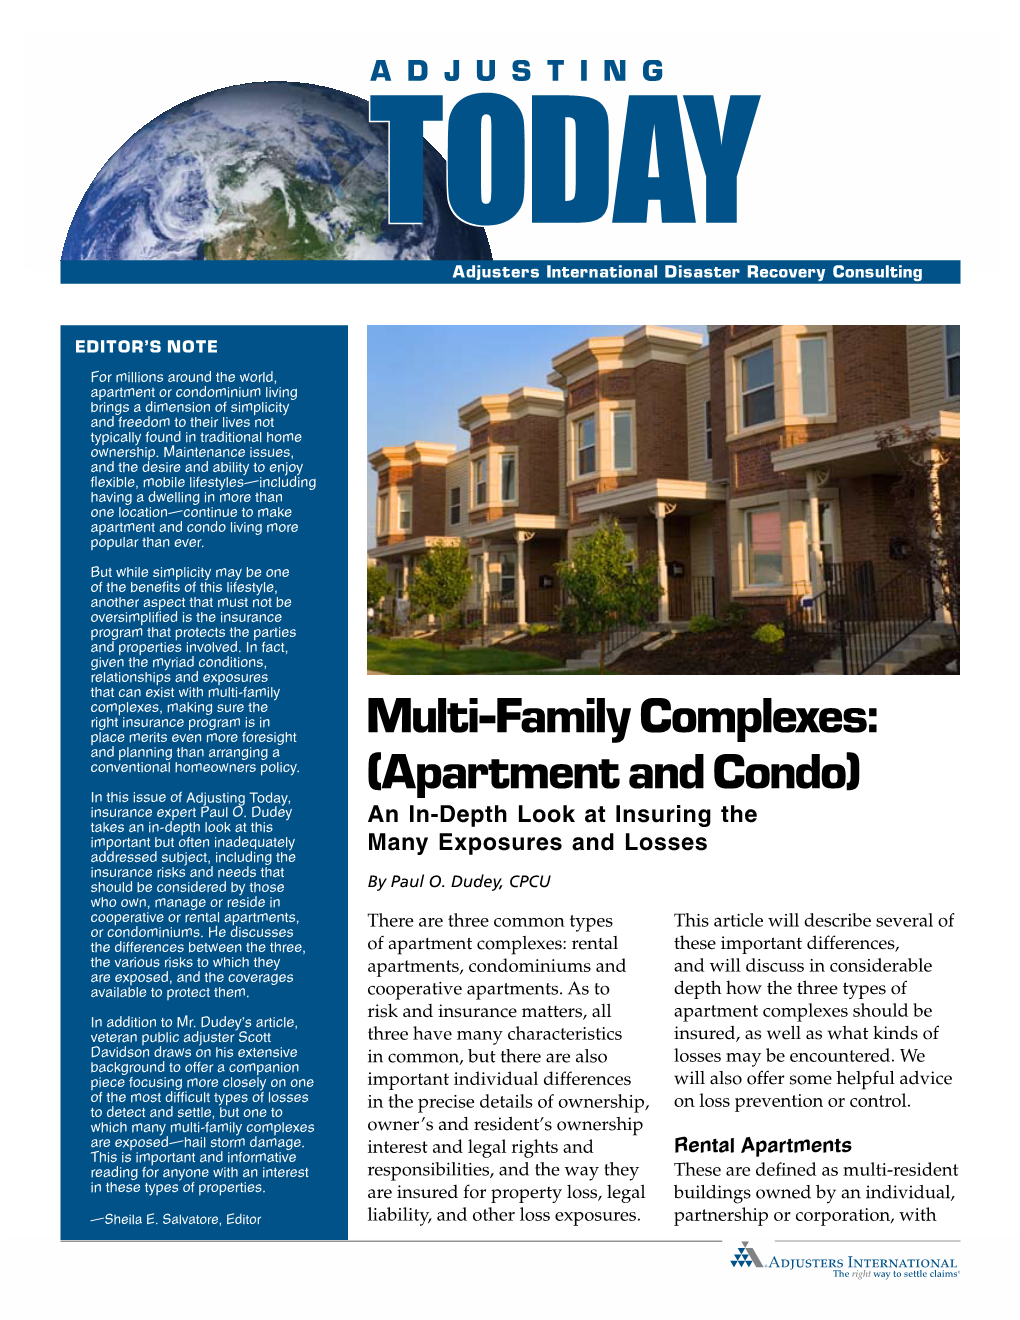 Multi-Family Complexes: (Apartment and Condo)